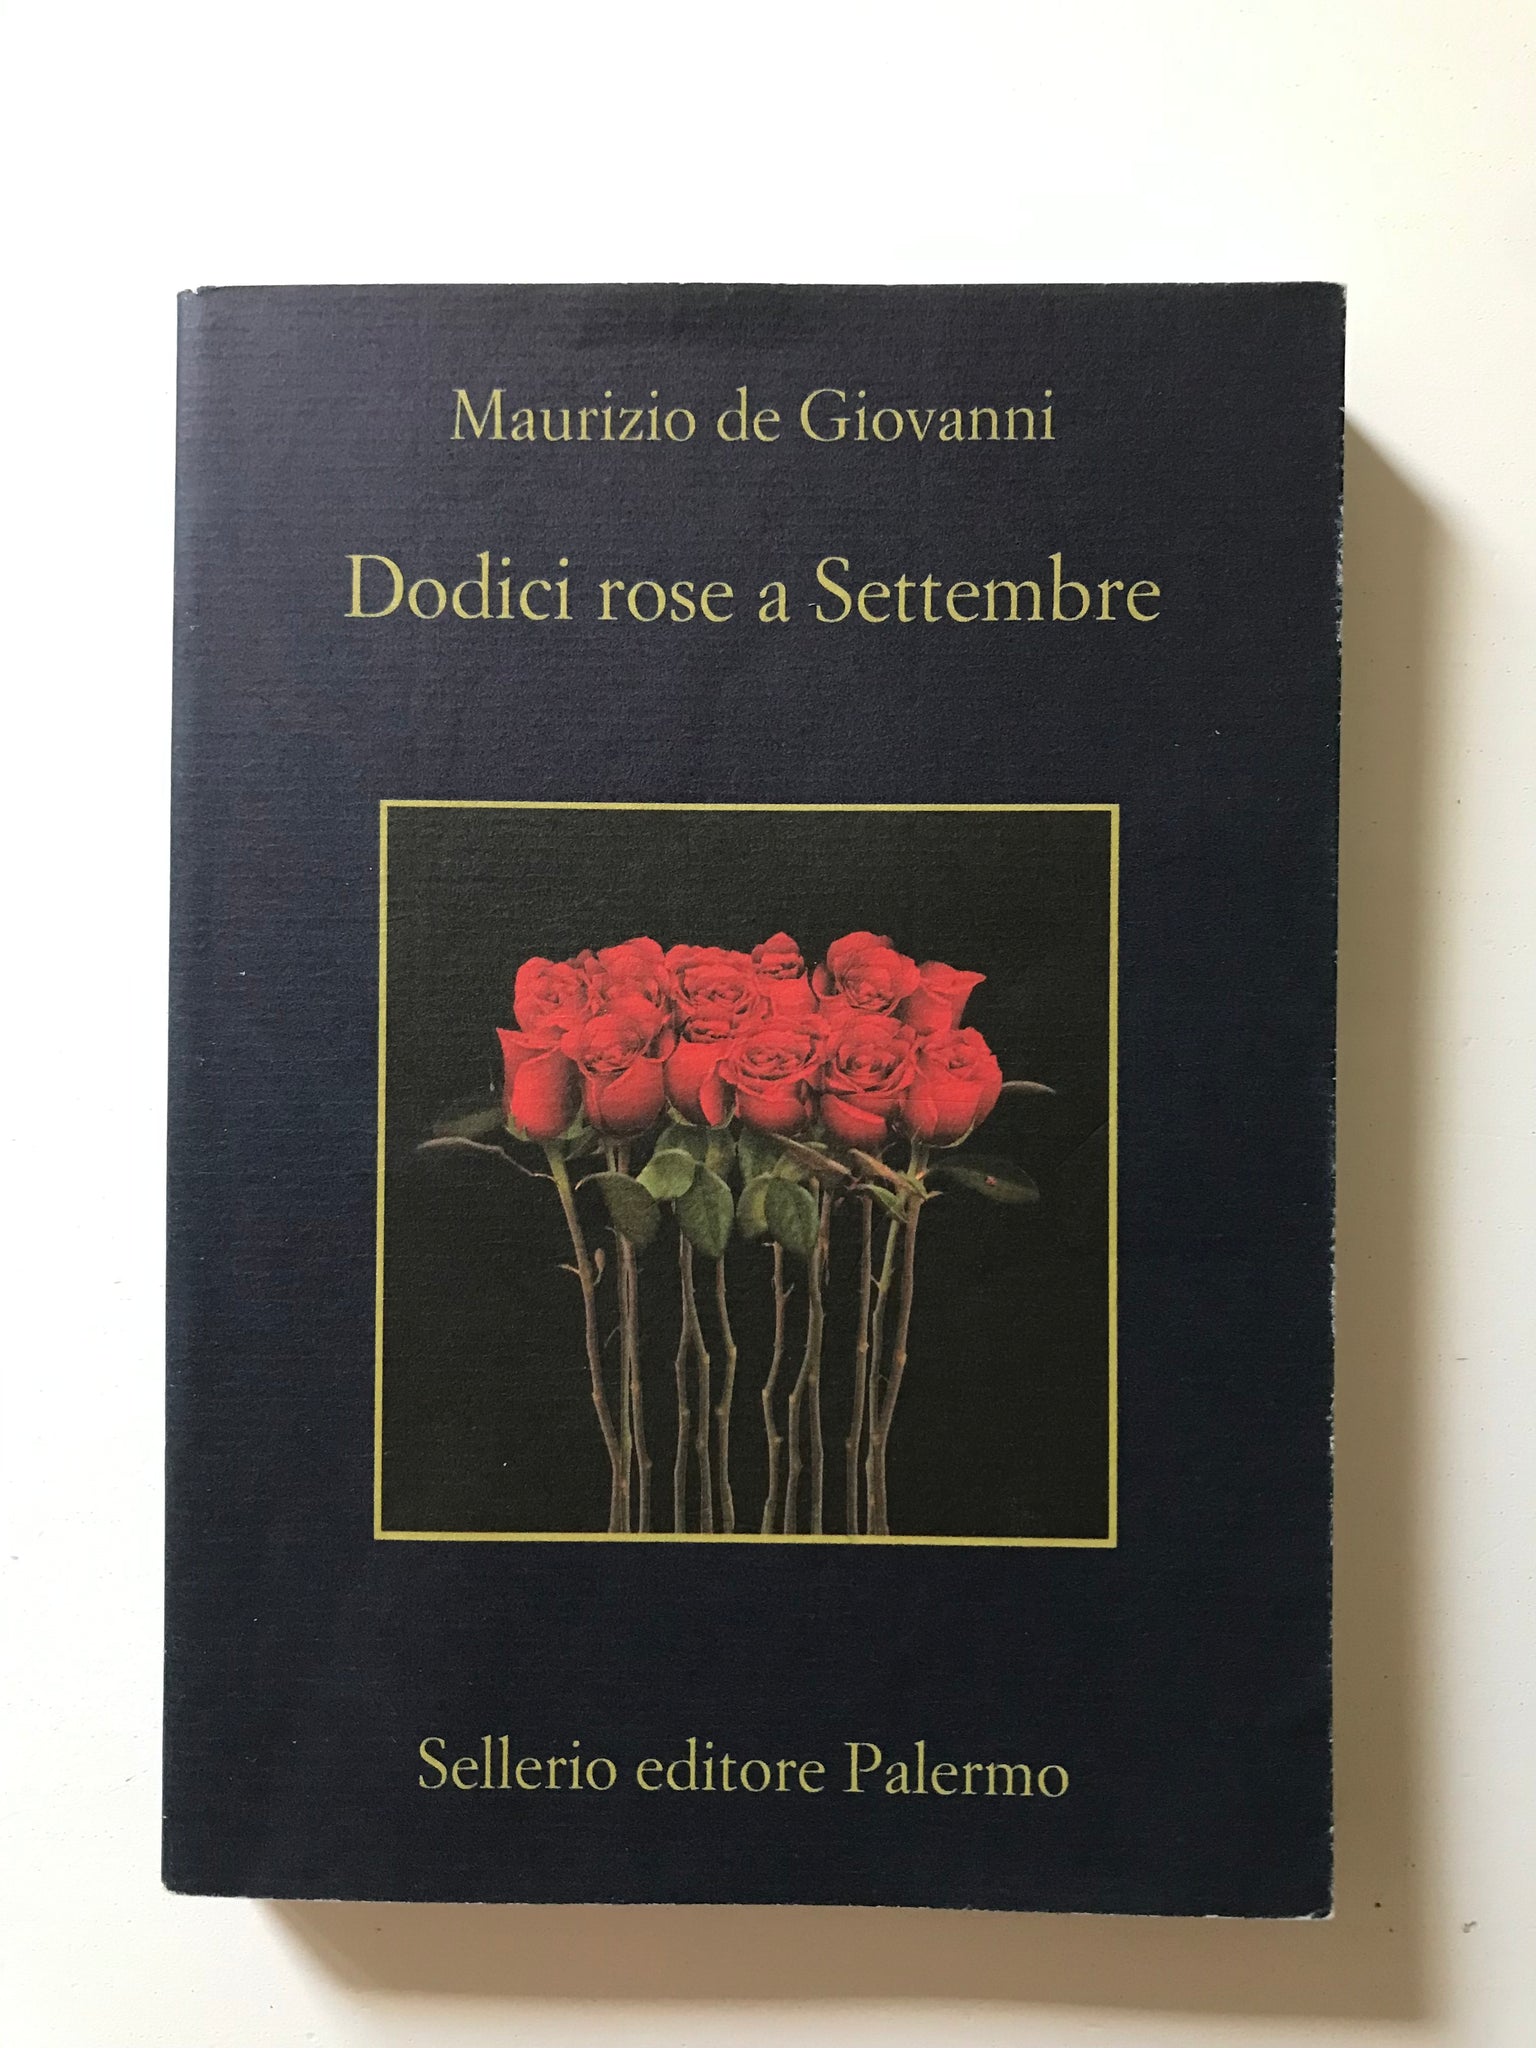 Maurizio de Giovanni - Dodici rose a Settembre